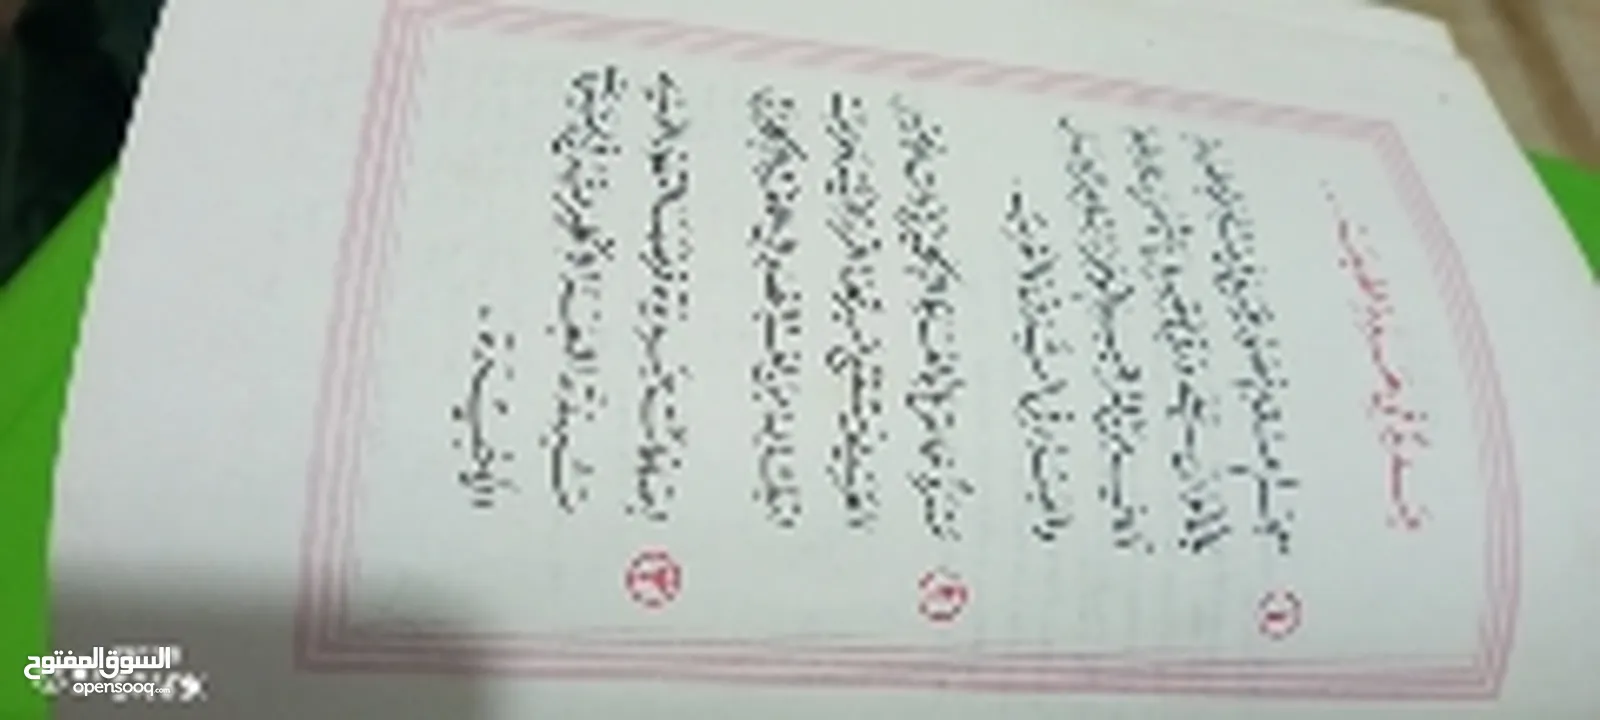 قاموس انجليزي عربي ضخم  مع صور ملونه